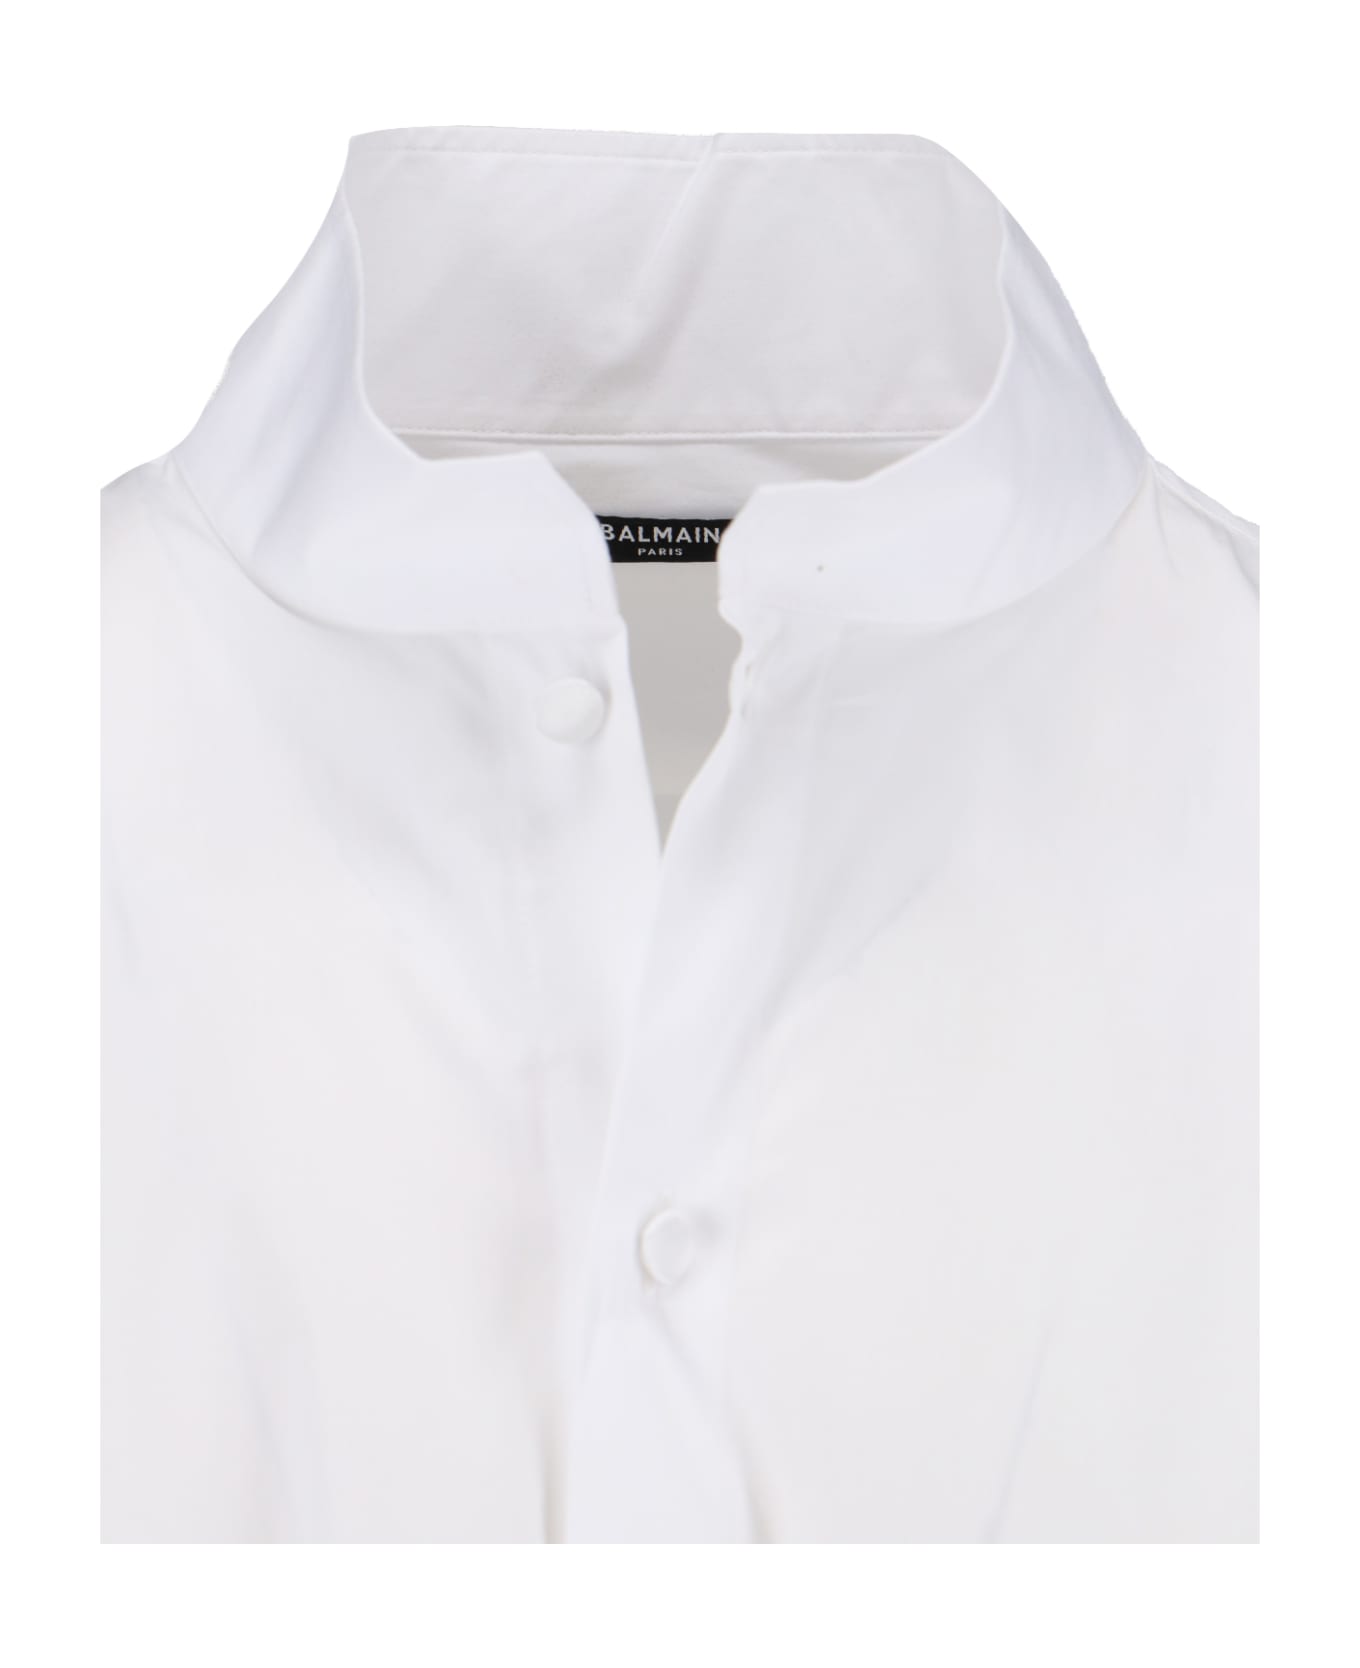 Balmain Shirt In White Cotton - White